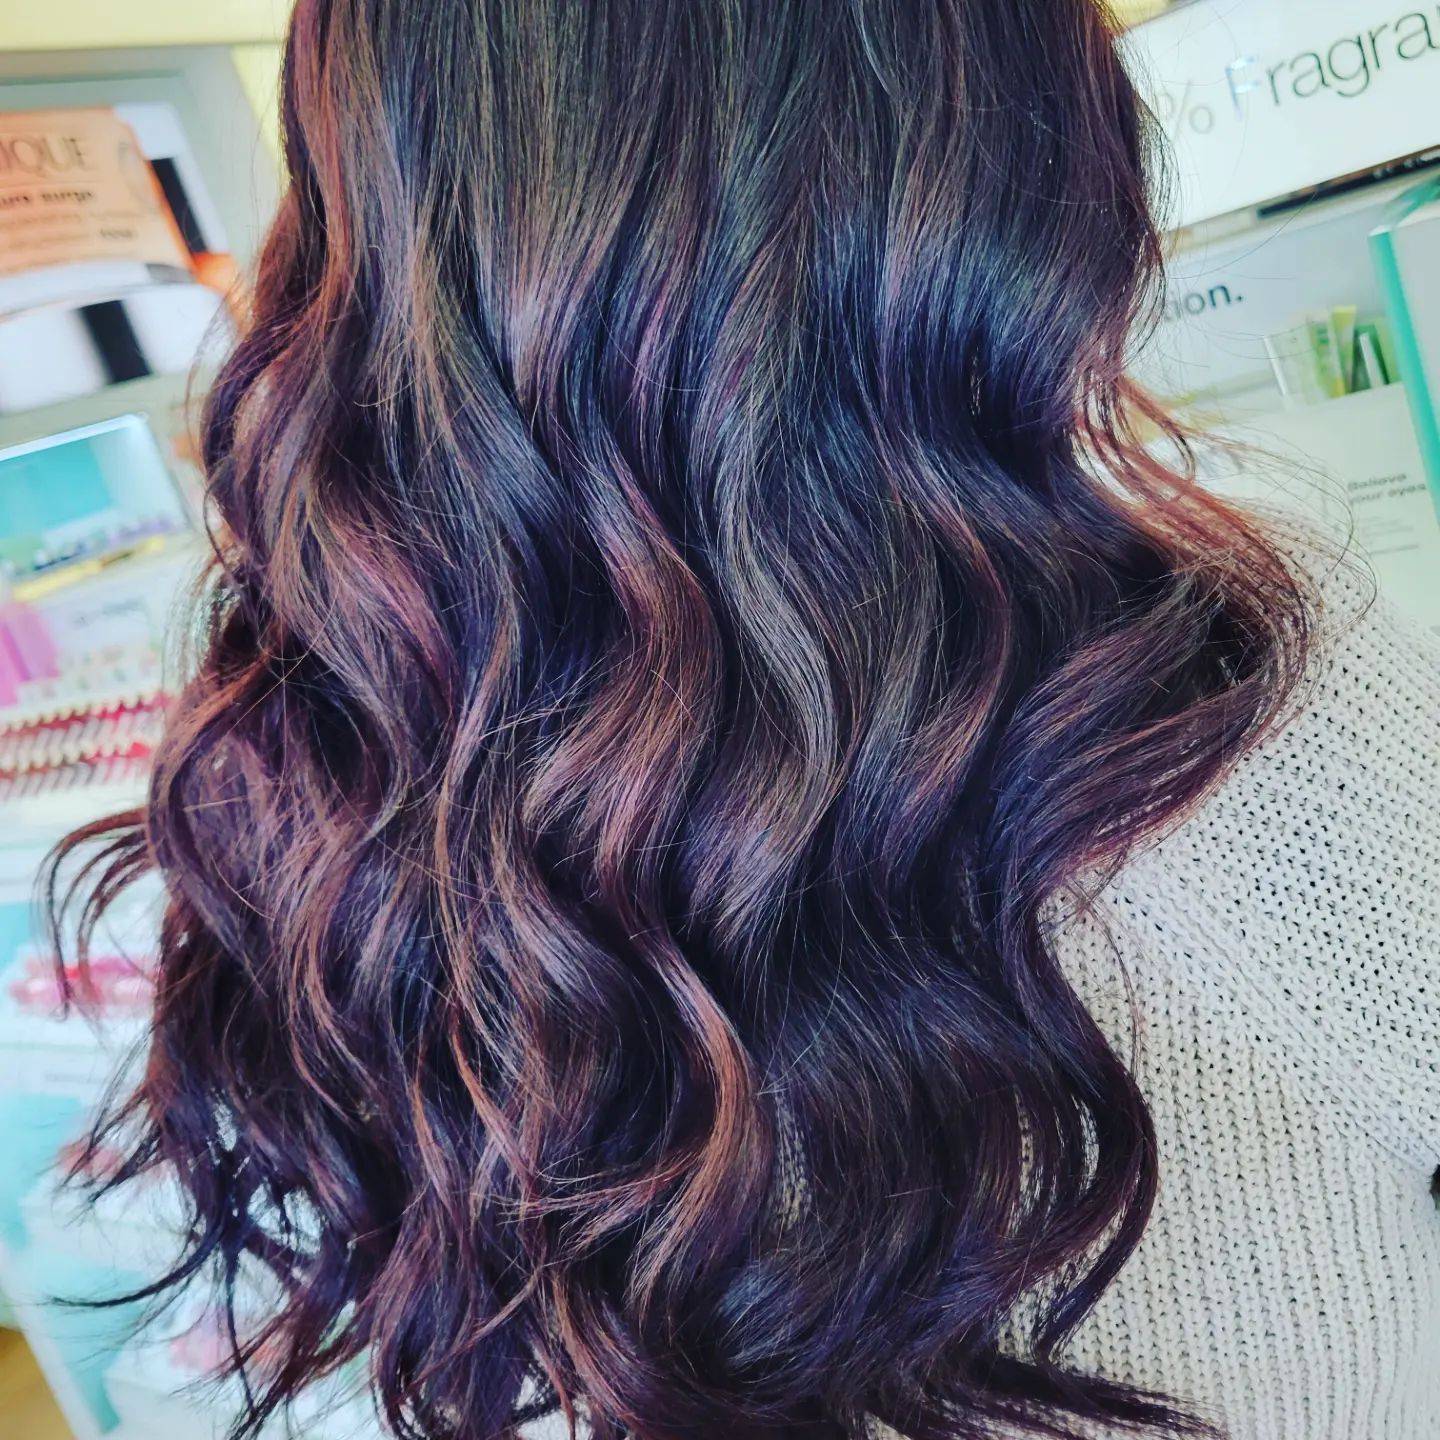 Burgundy hair color 362 burgundy hair color | burgundy hair color for women | burgundy hair color highlights Burgundy Hair Color